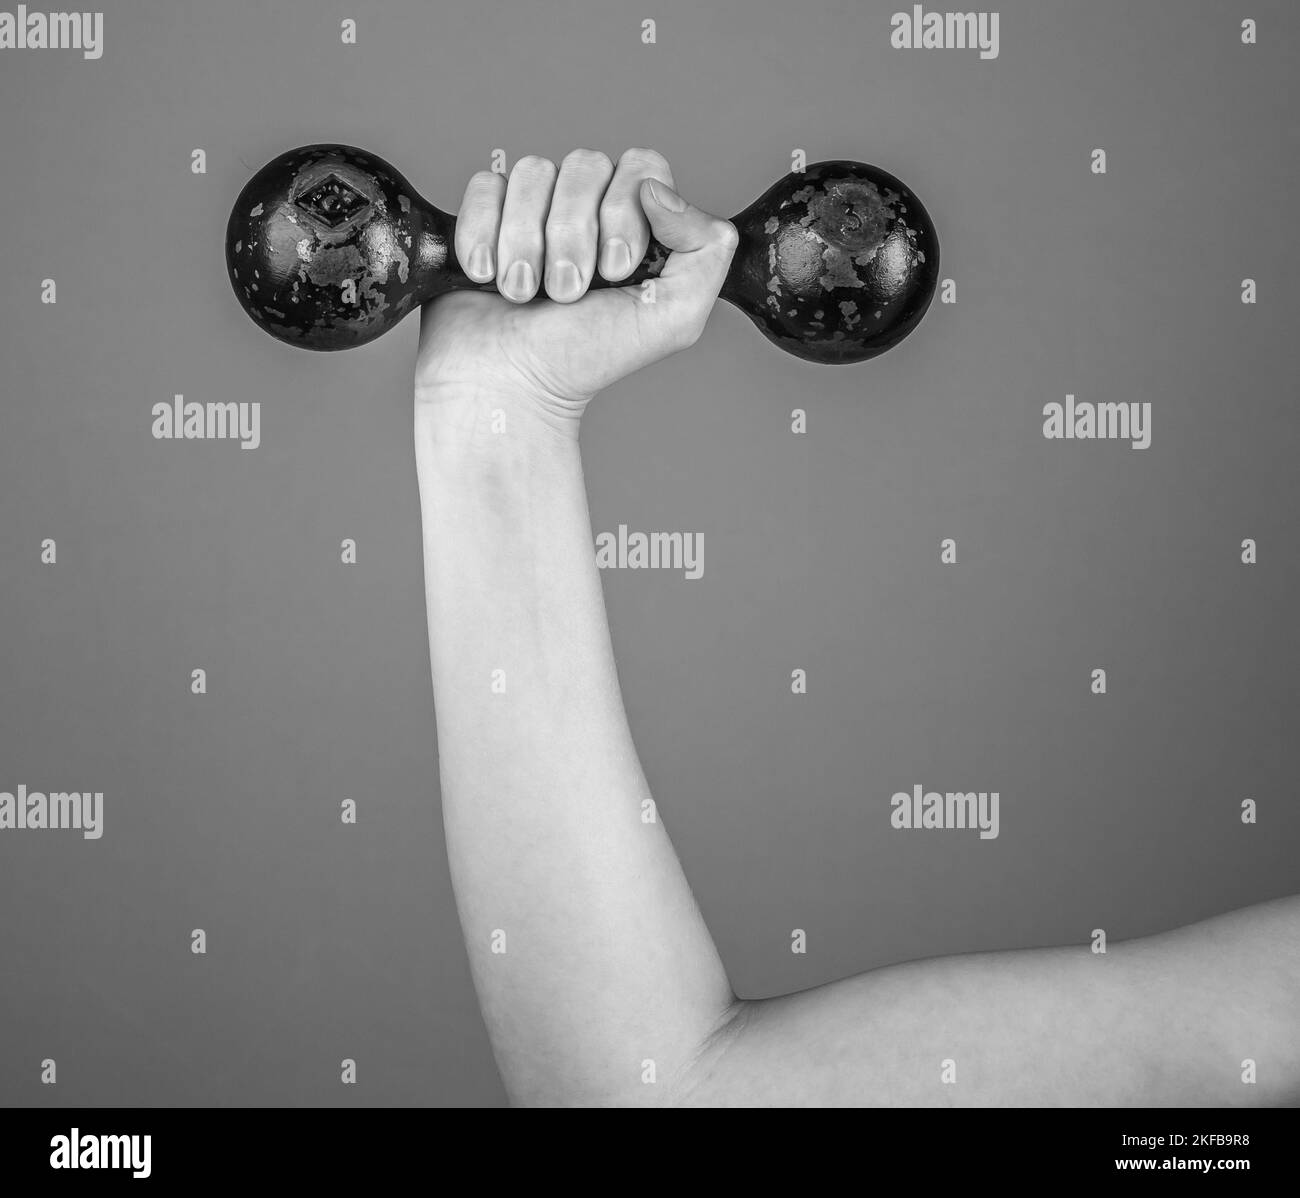 Manubro in mano femminile per sollevamento pesi, allenamento, allenamento. Foto di alta qualità Foto Stock